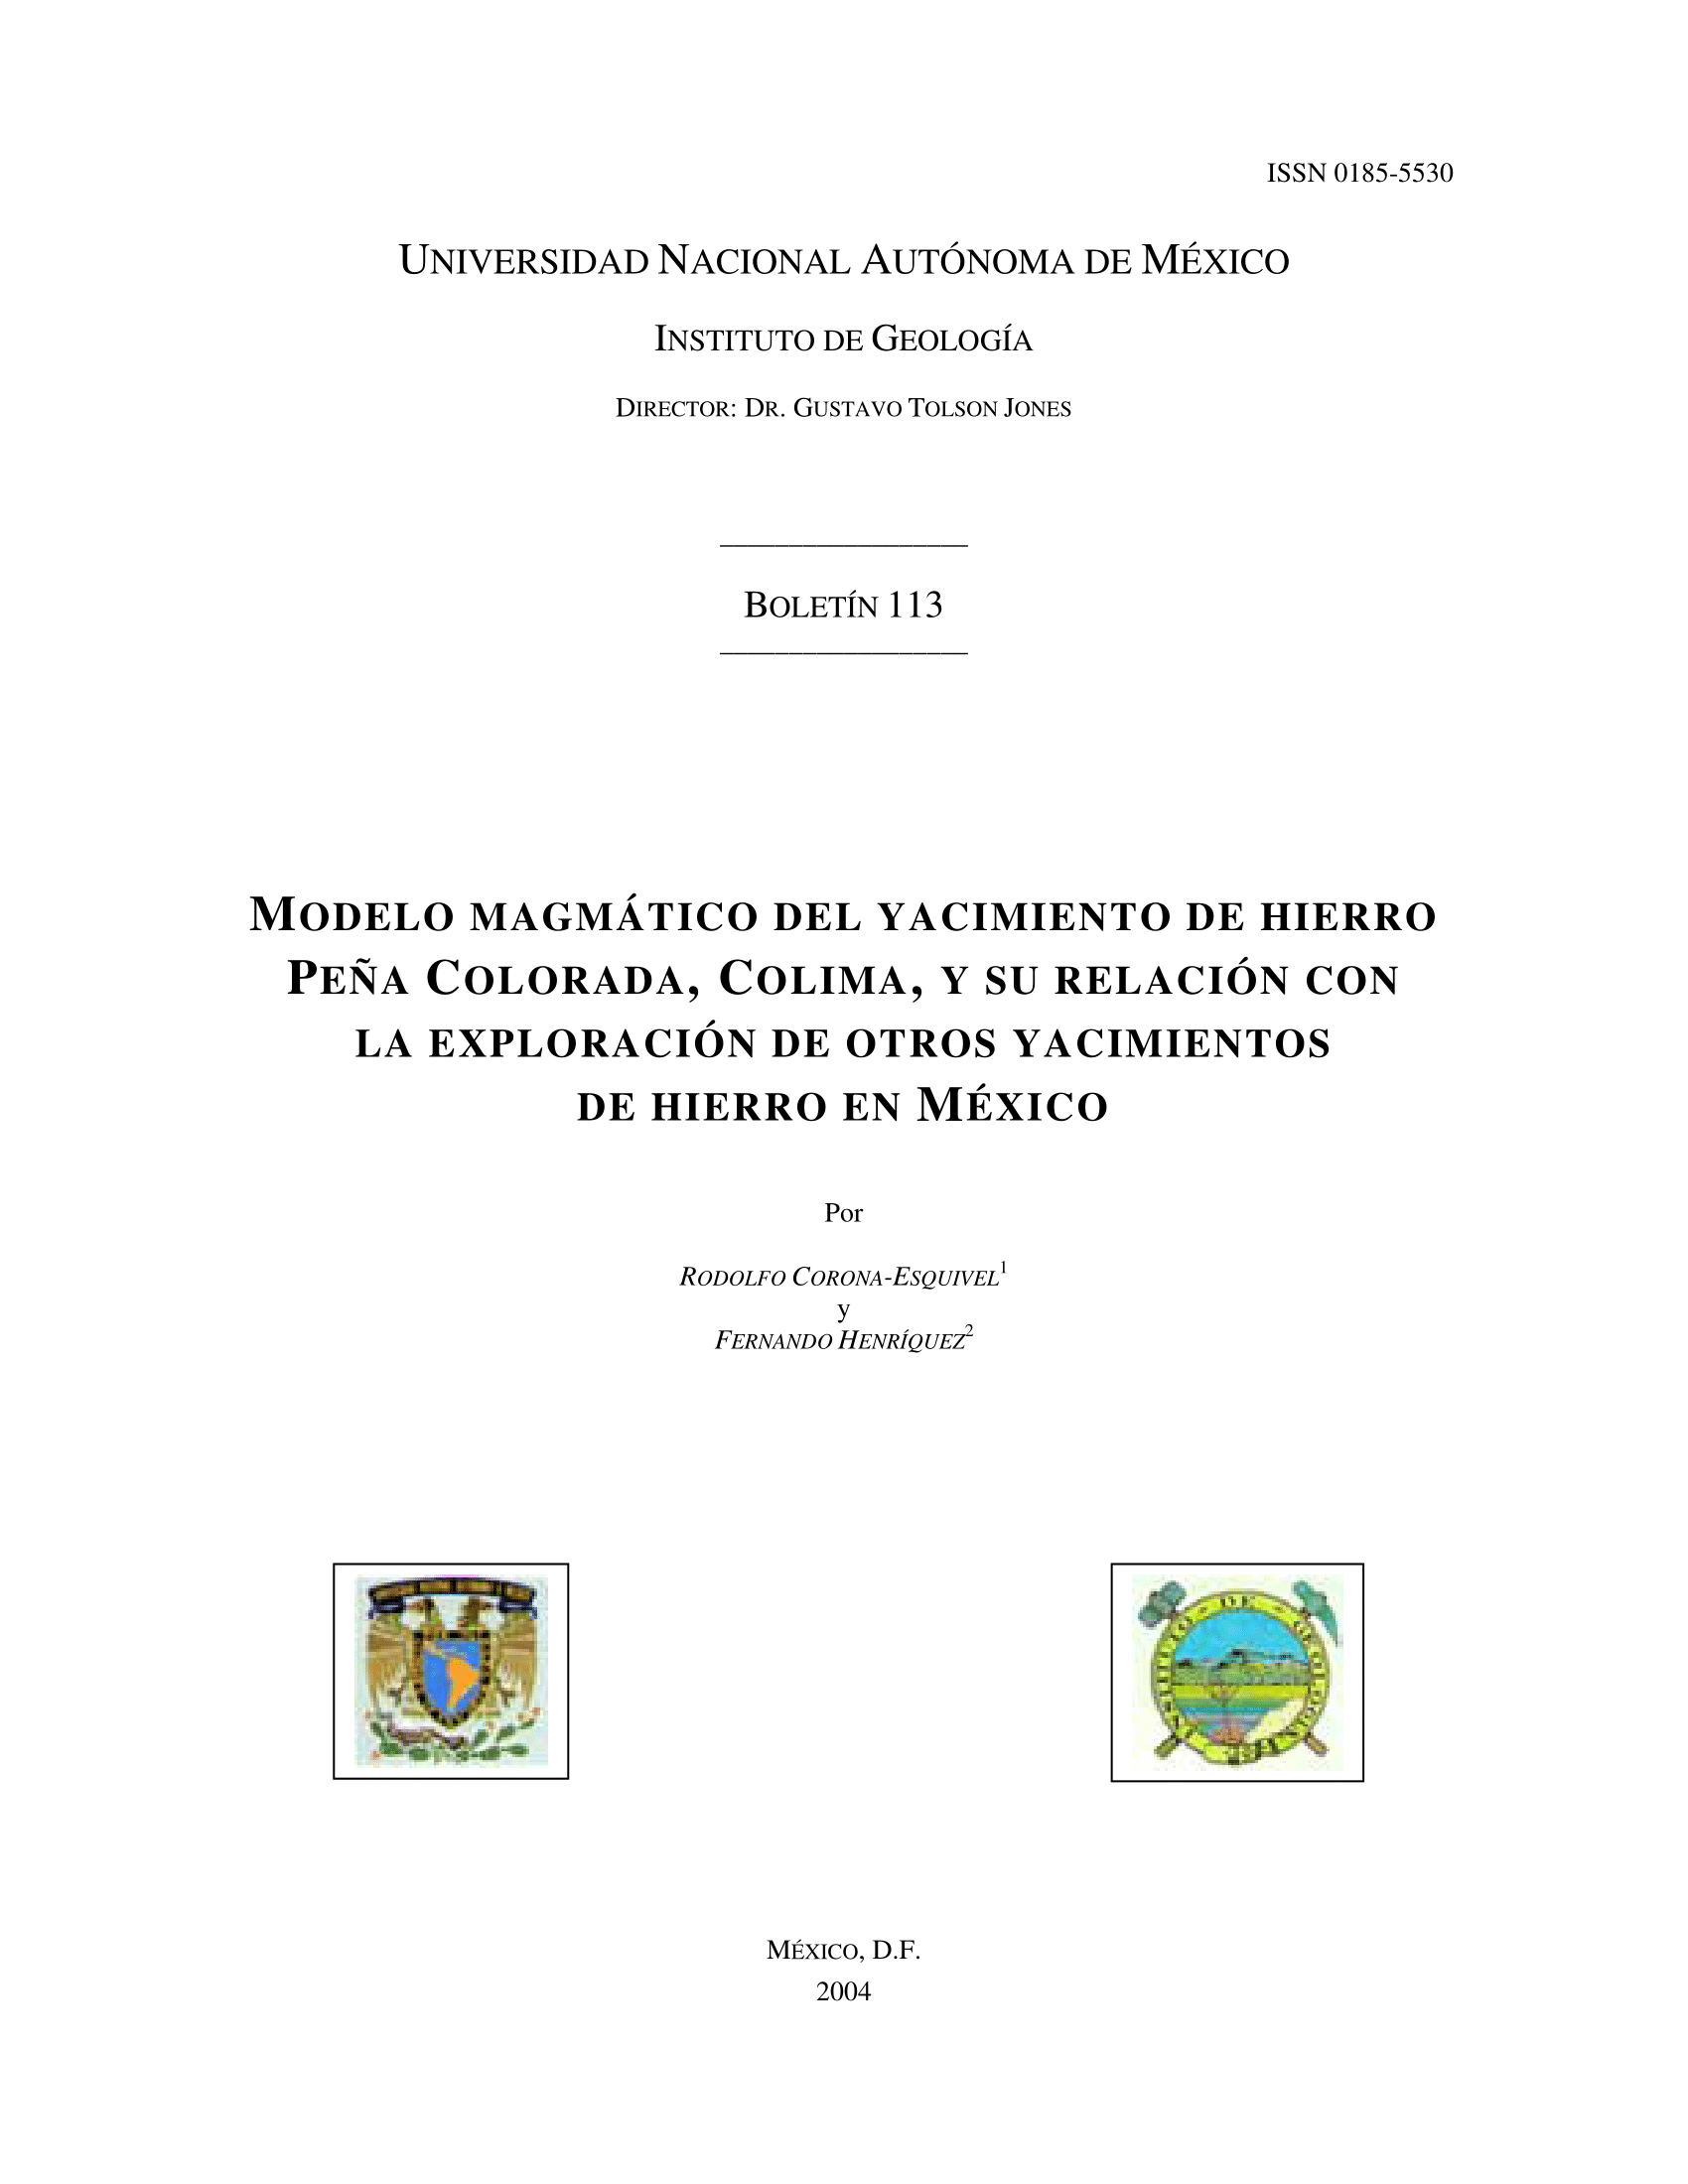 					Ver Núm. 113 (2004): Modelo Magmático del yacimiento del hierro Peña Colorada, Colima, y su relación con la exploracion de otros yacimientos de hierro en México  
				